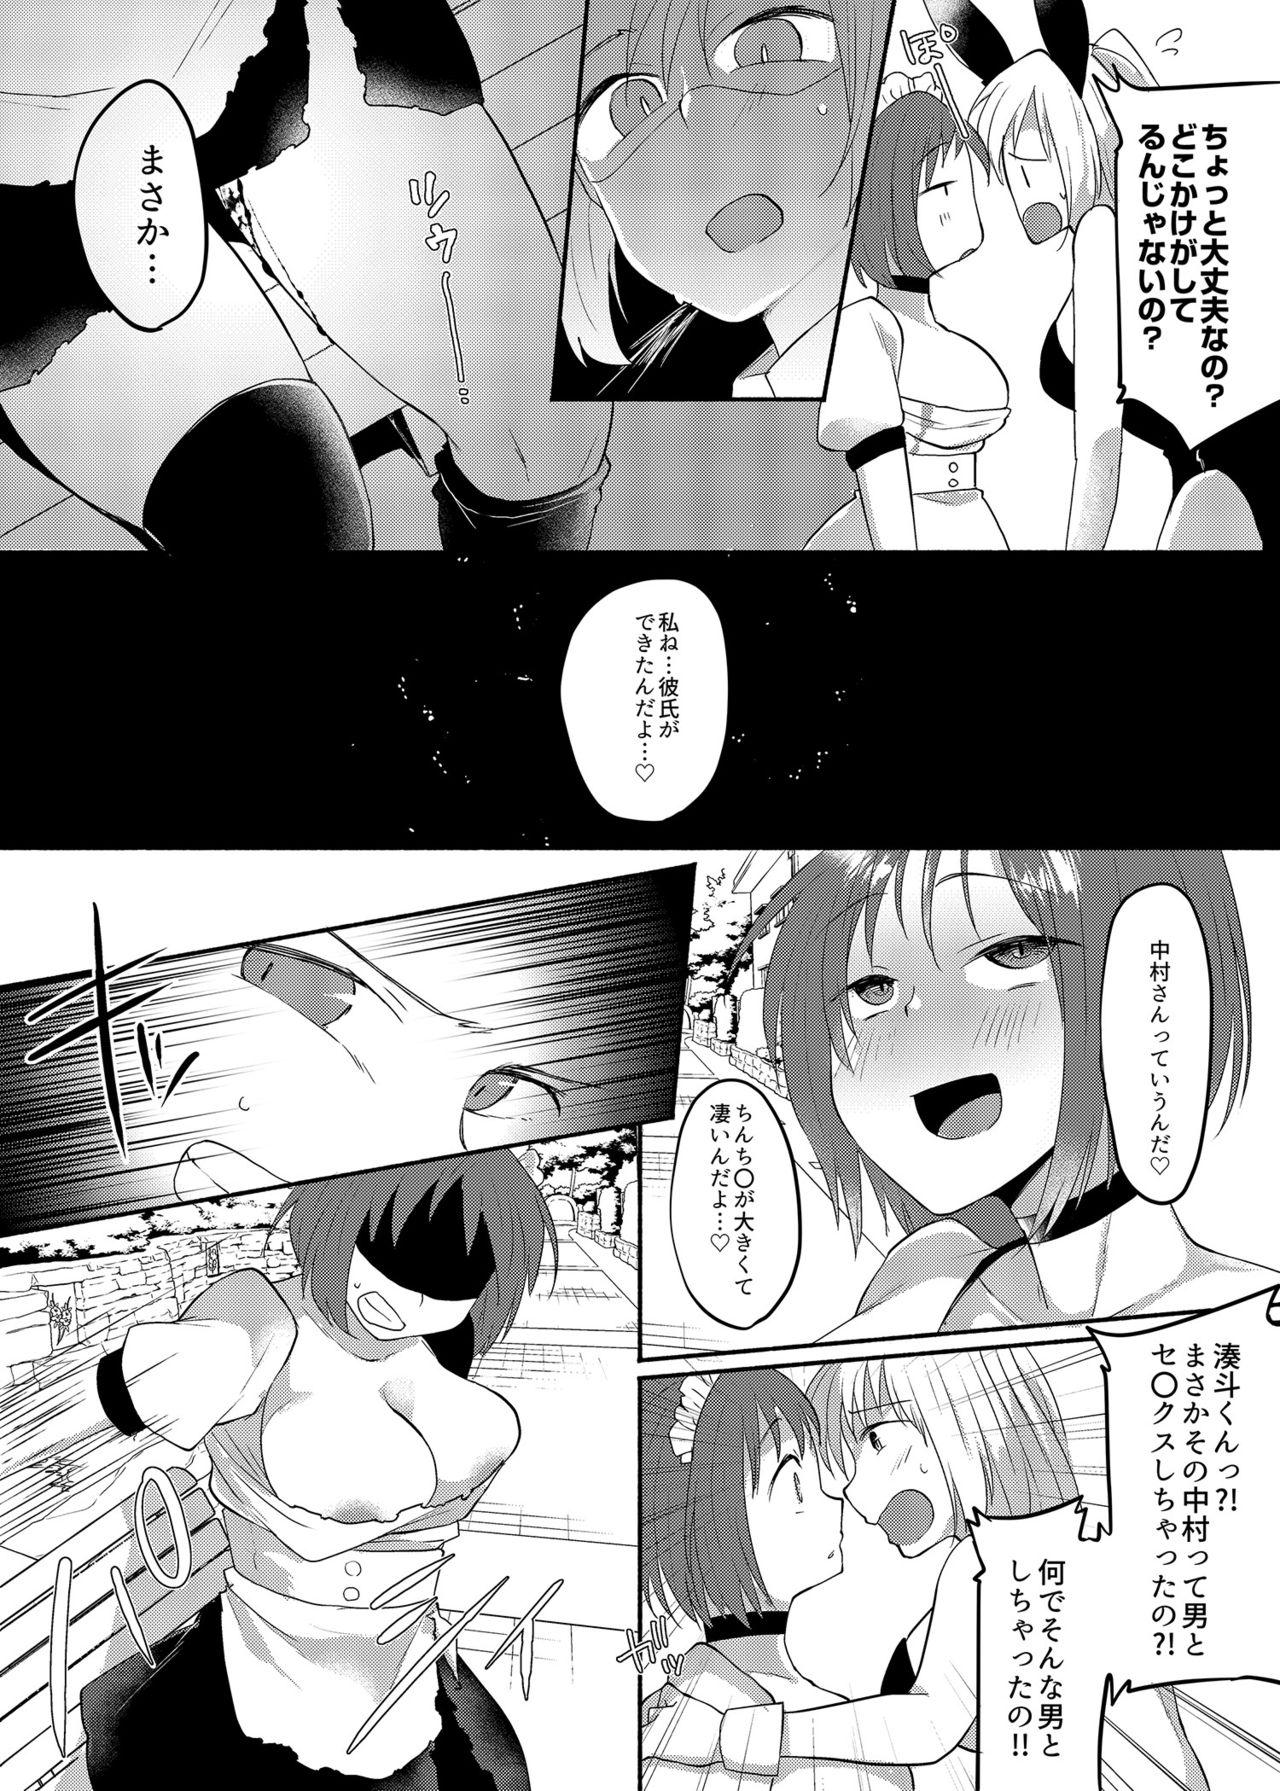 Safadinha Josouheki ga Kojiretara Konna Otona ni Narimashita 2 - Original Small - Page 29